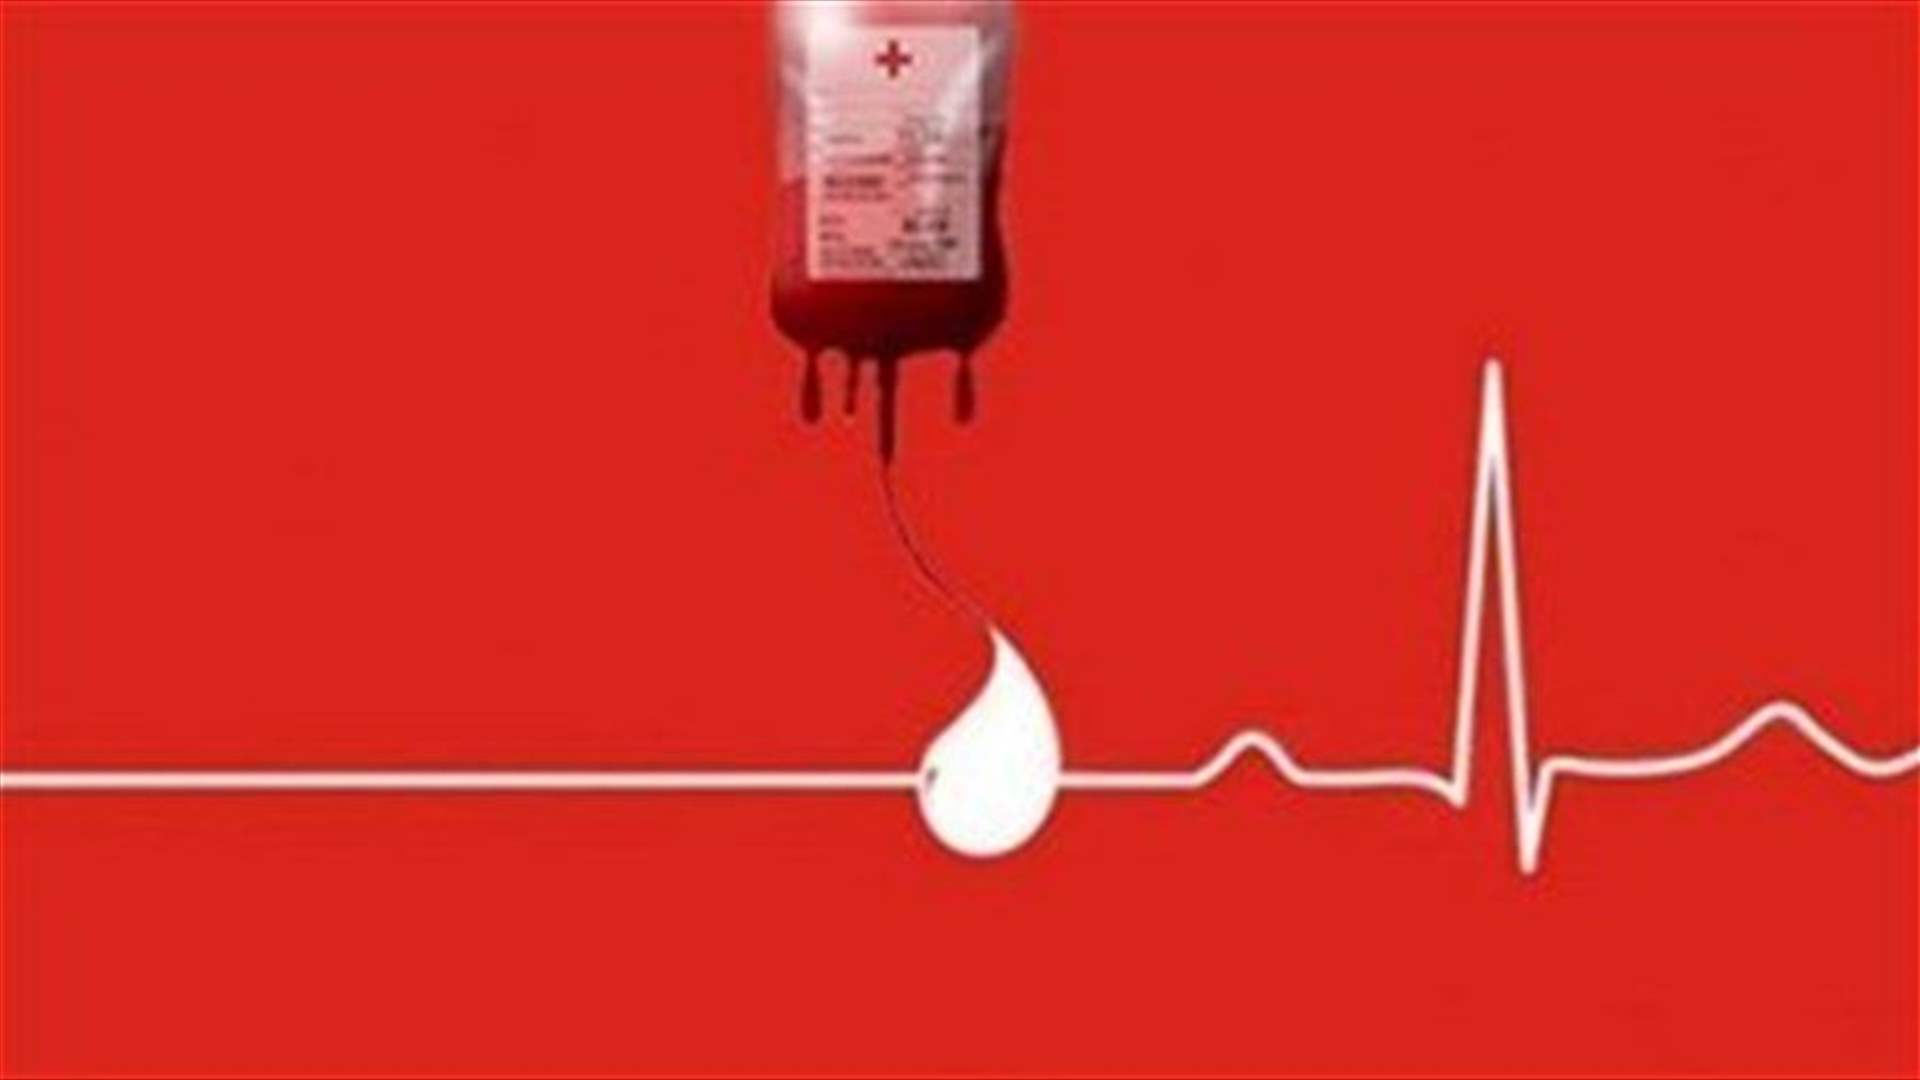 السيدة ساميا أبو حيدر بحاجة ماسة إلى وحدتي دم من فئة O+ ... للتبرع في مركز الصليب الاحمر في انطلياس أو الاتصال على الرقم التالي: 03678323